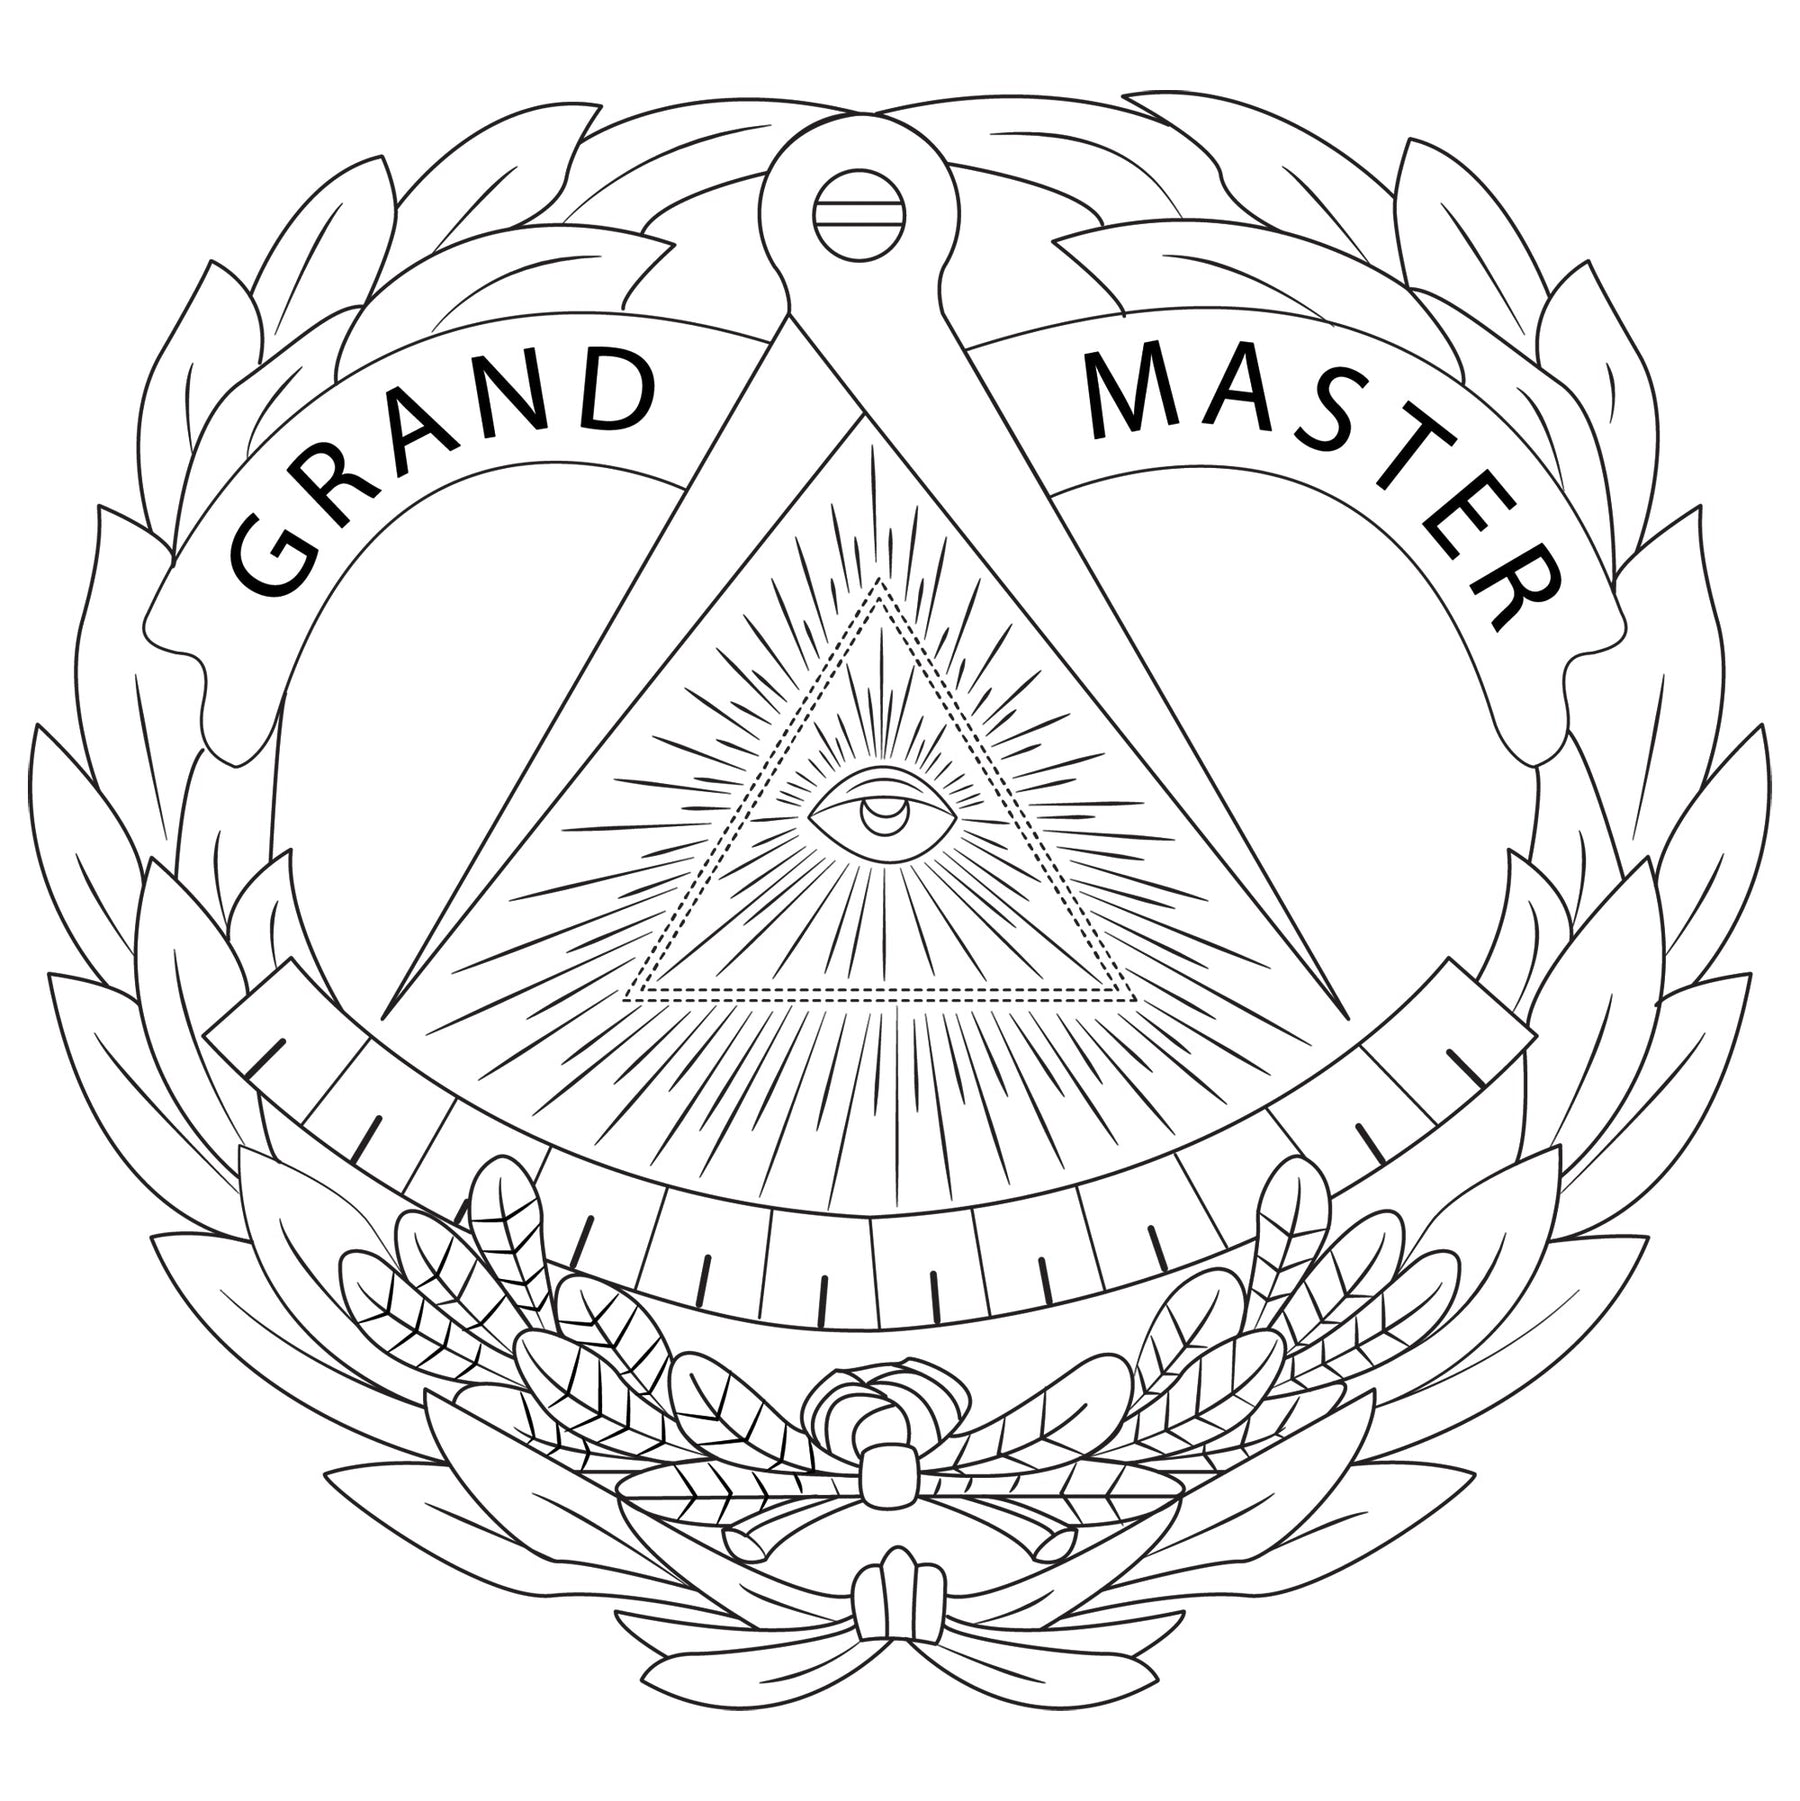 Grand Master Blue Lodge Jacket - Various Colors - Bricks Masons